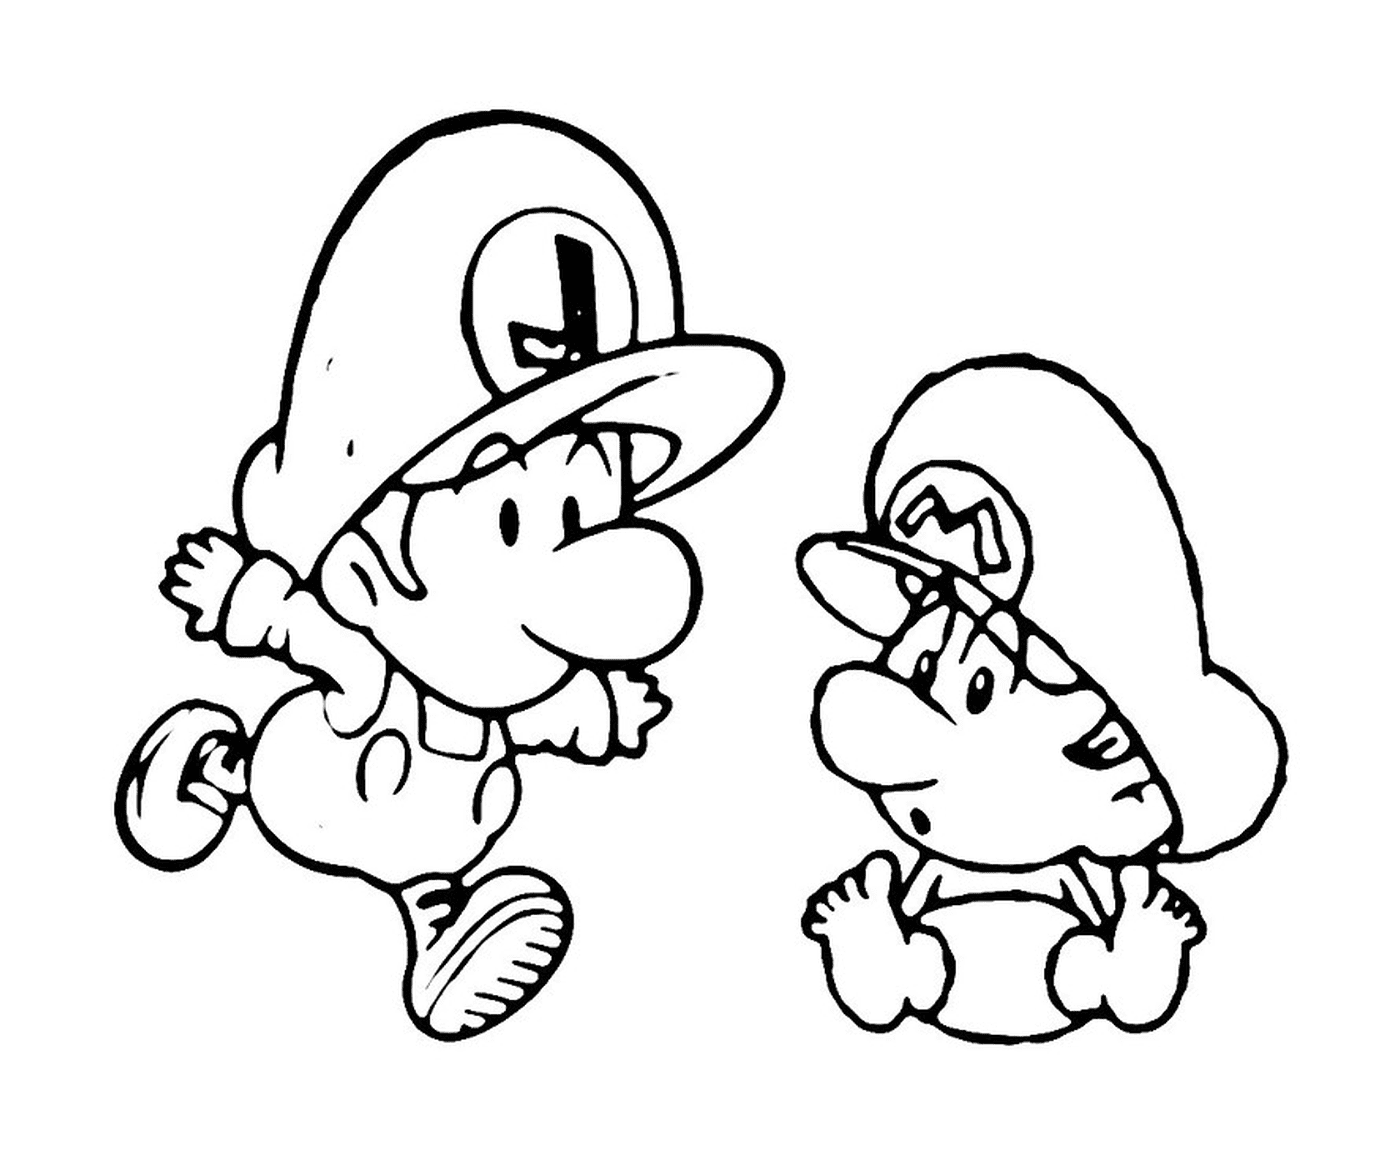  Duo Mario and Luigi 